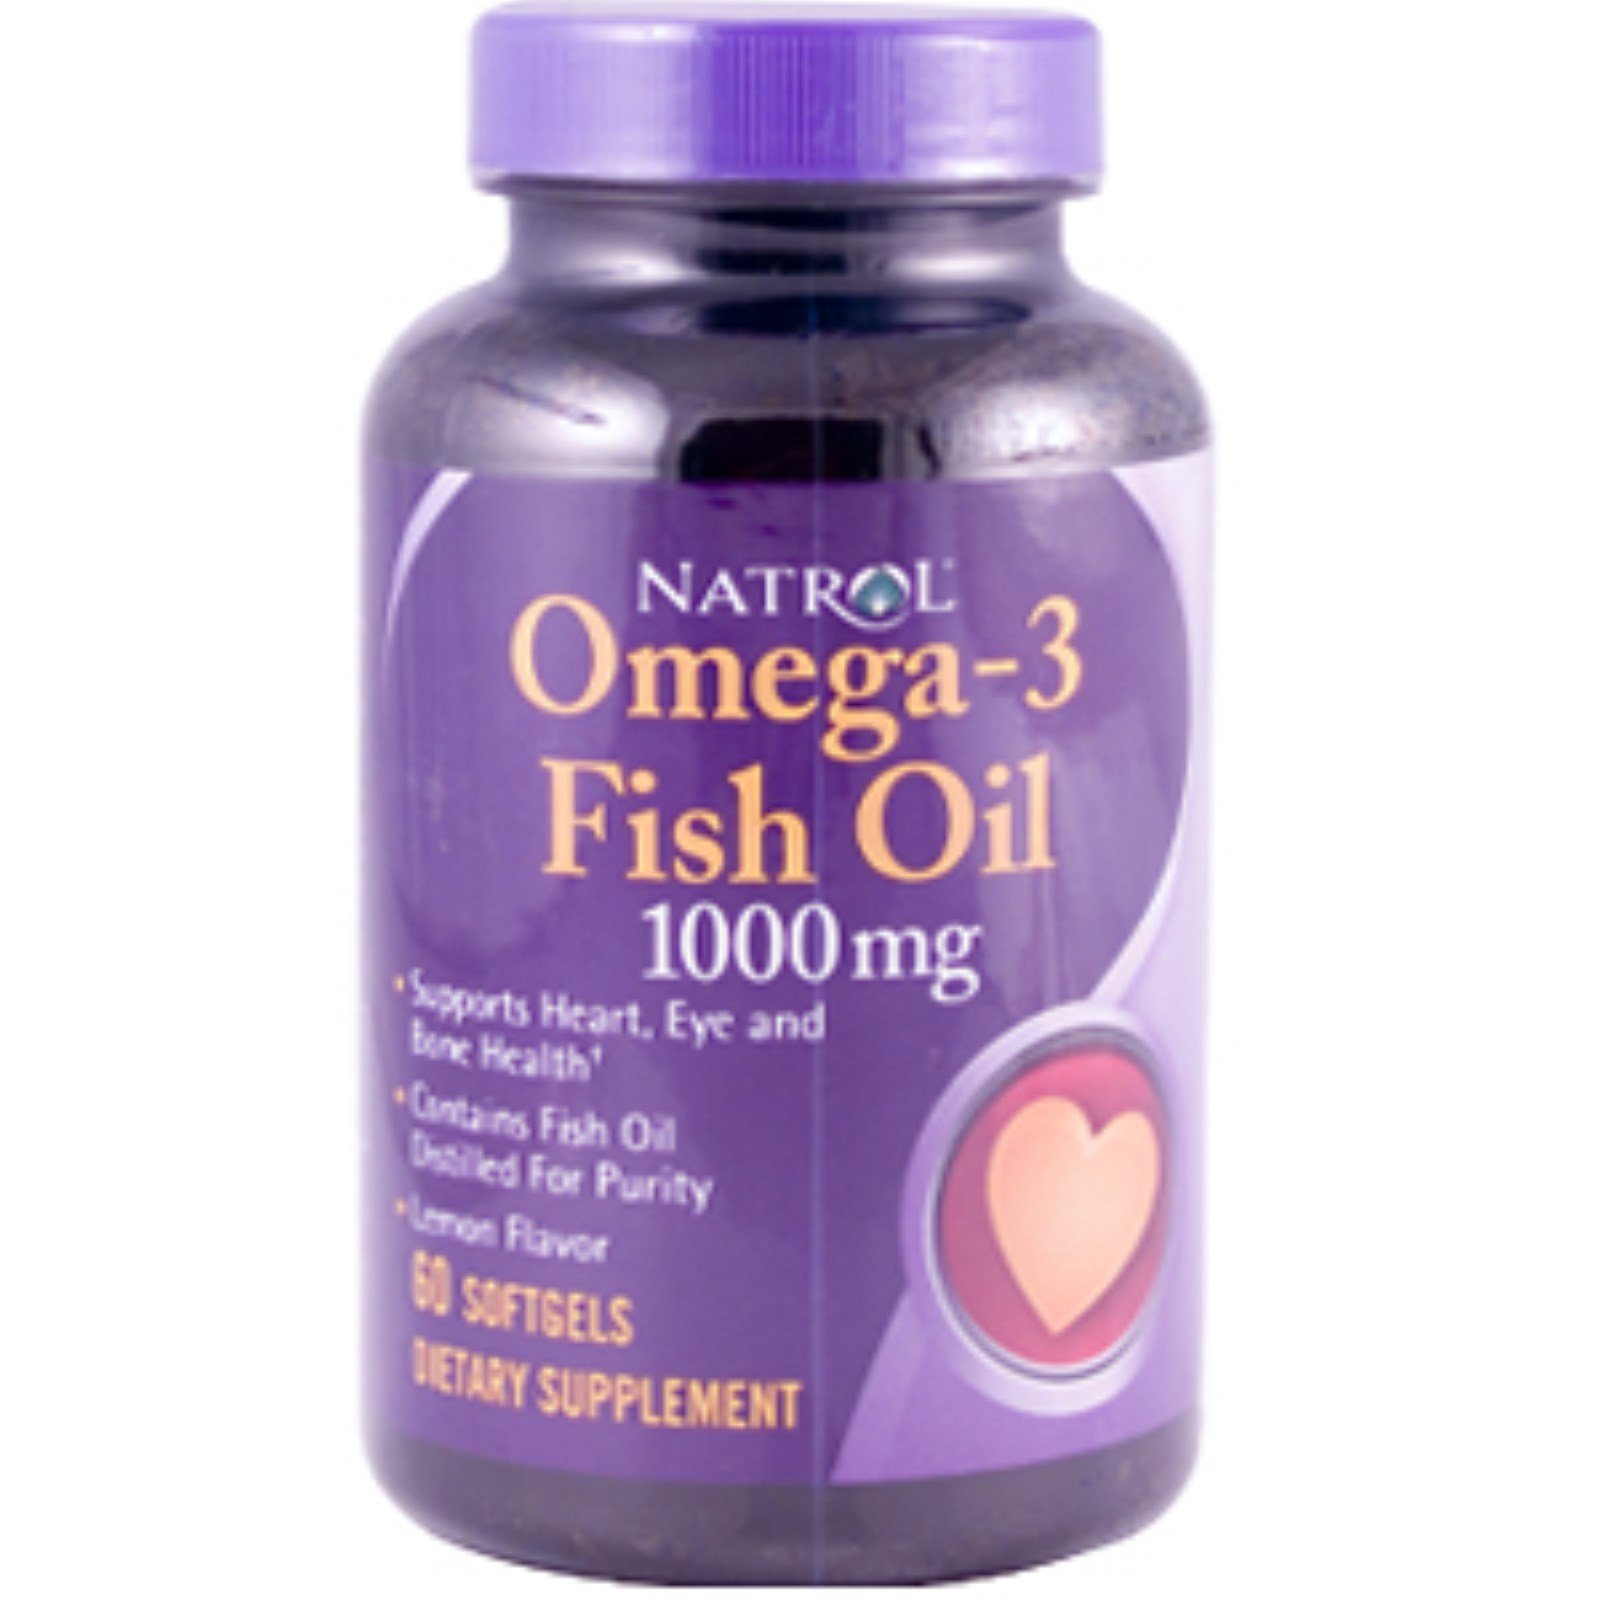 Omega-3 Fish Oil 1000 mg, 60 шт, Natrol. Омега 3 (Рыбий жир). Поддержание здоровья Укрепление суставов и связок Здоровье кожи Профилактика ССЗ Противовоспалительные свойства 